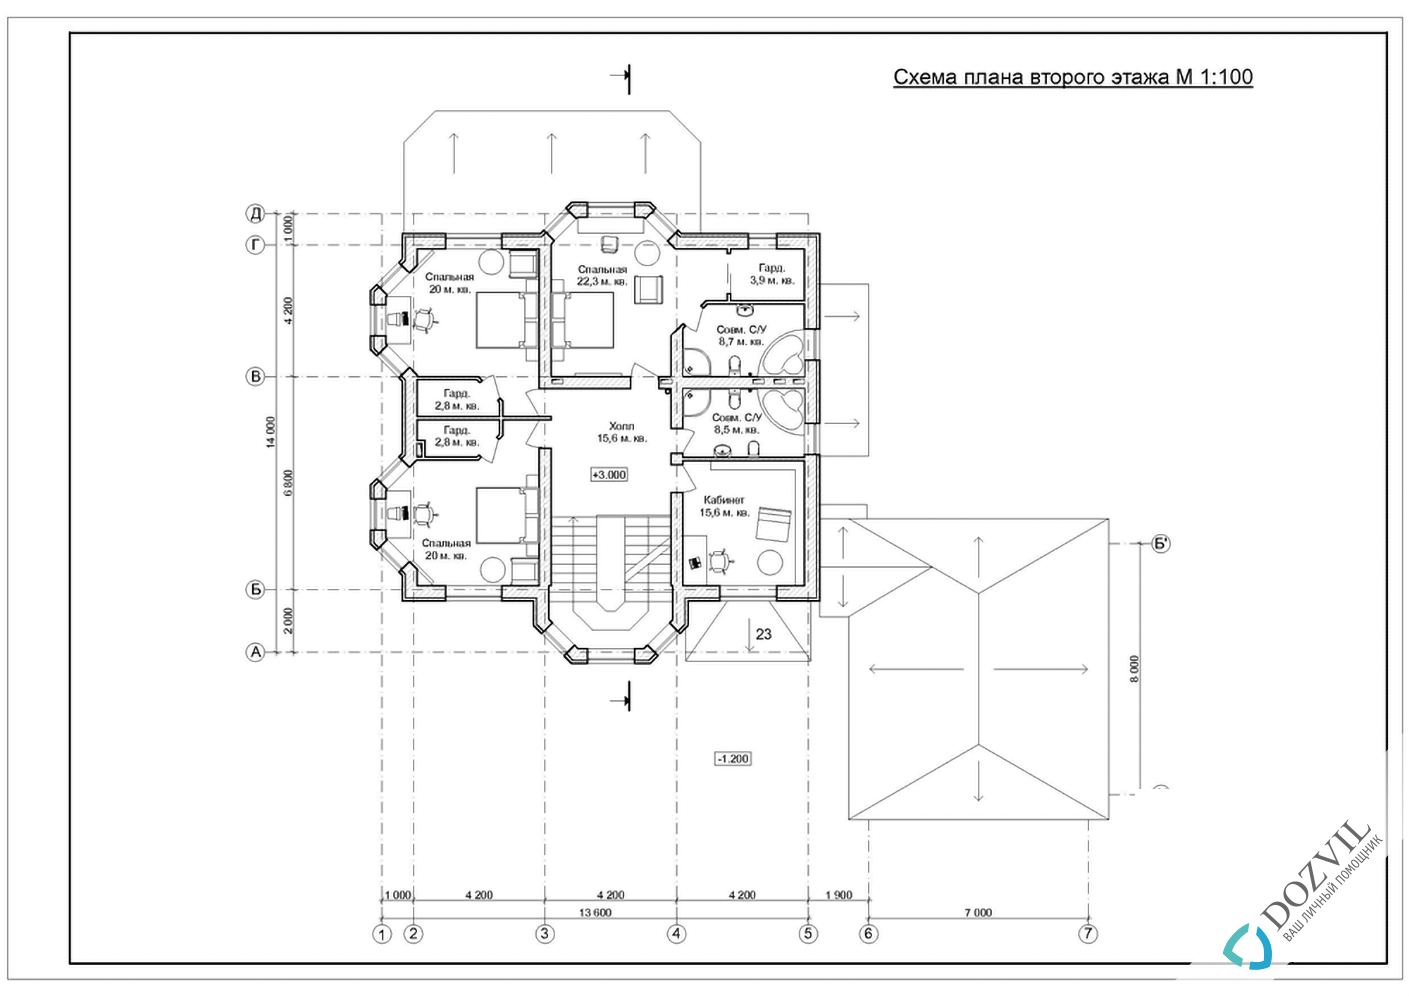 Оформлення гаража> Гараж на ділянці поруч з житловим або садовим будинком > 2 етап - Розробка ескізу намірів будівництва